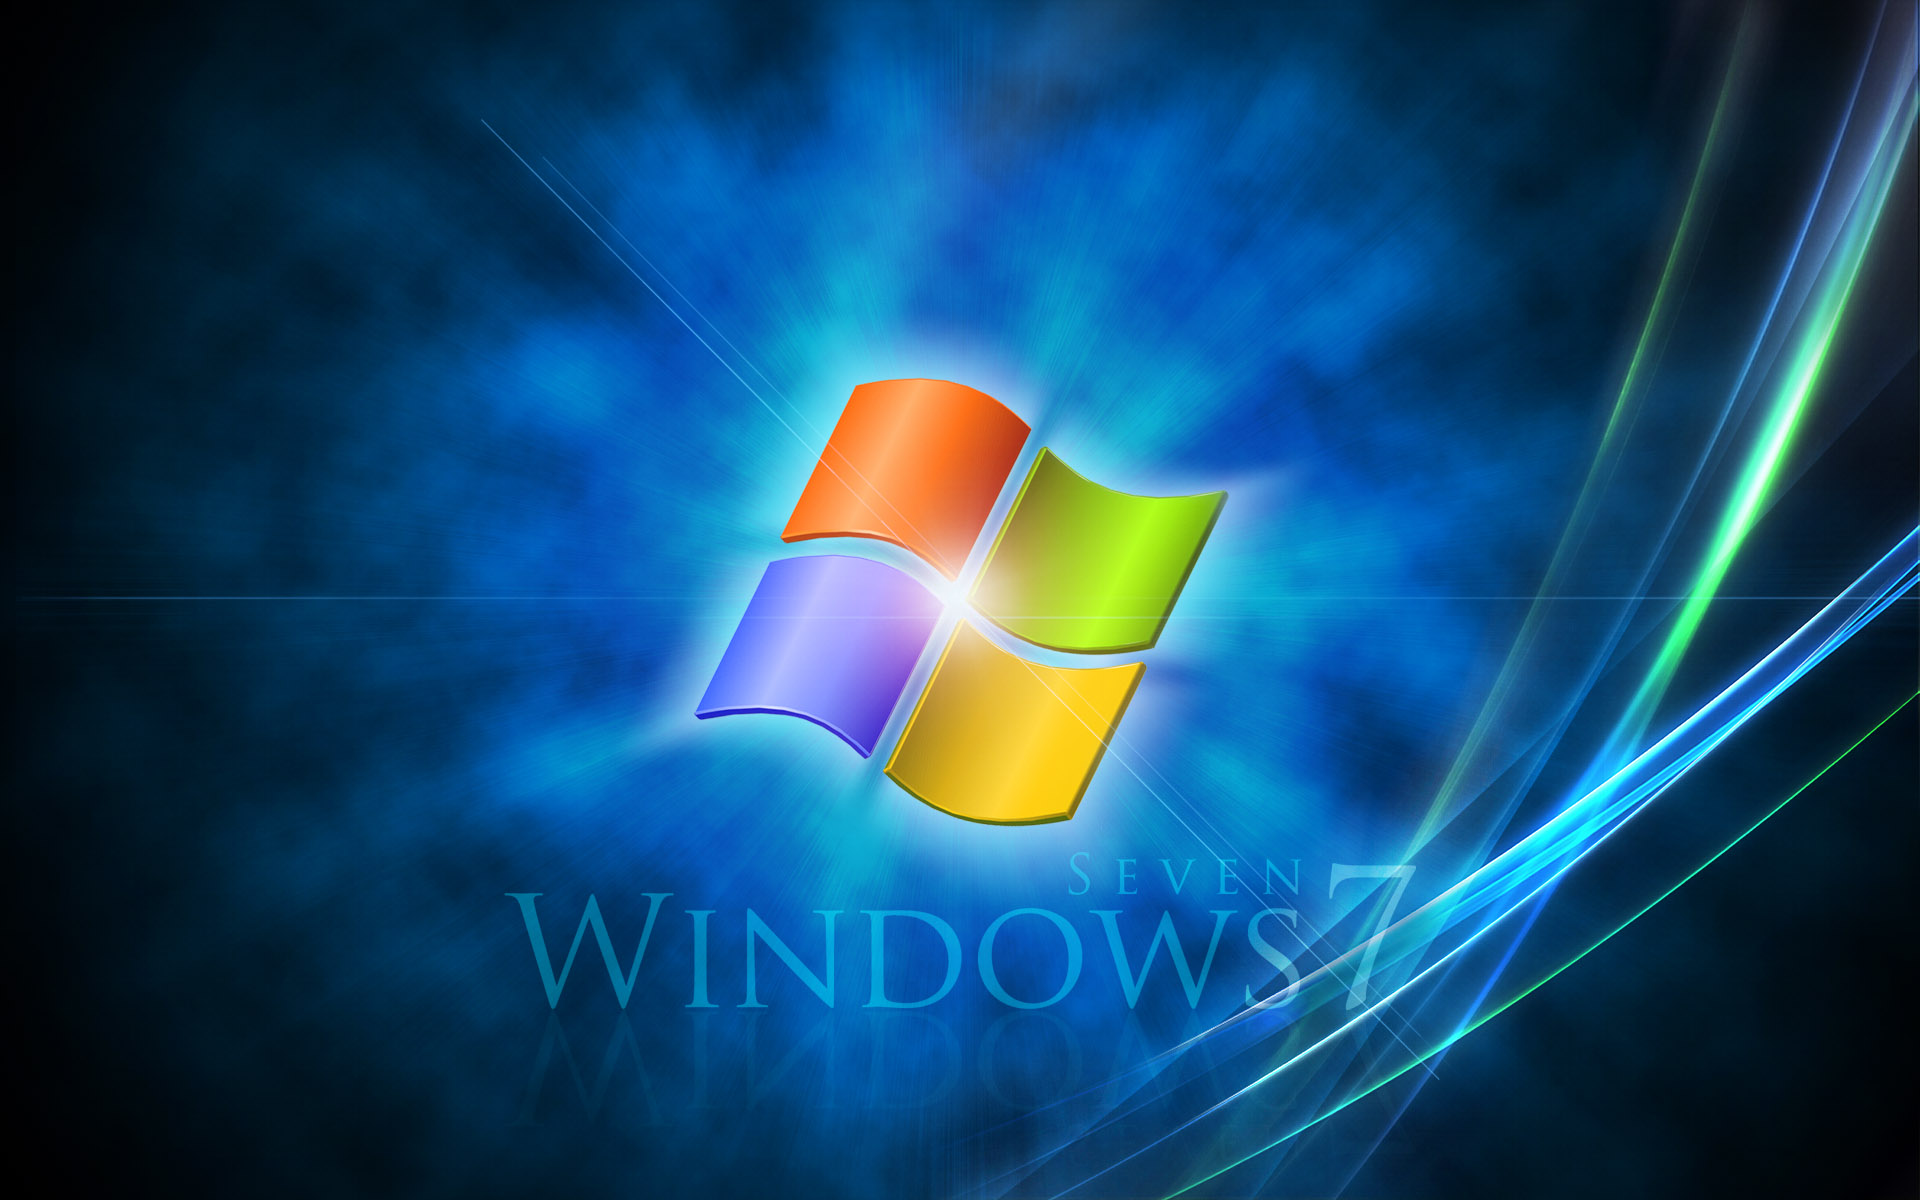 Windows 8 Ultimate Windows 7 Ultimate Windows 8 ...